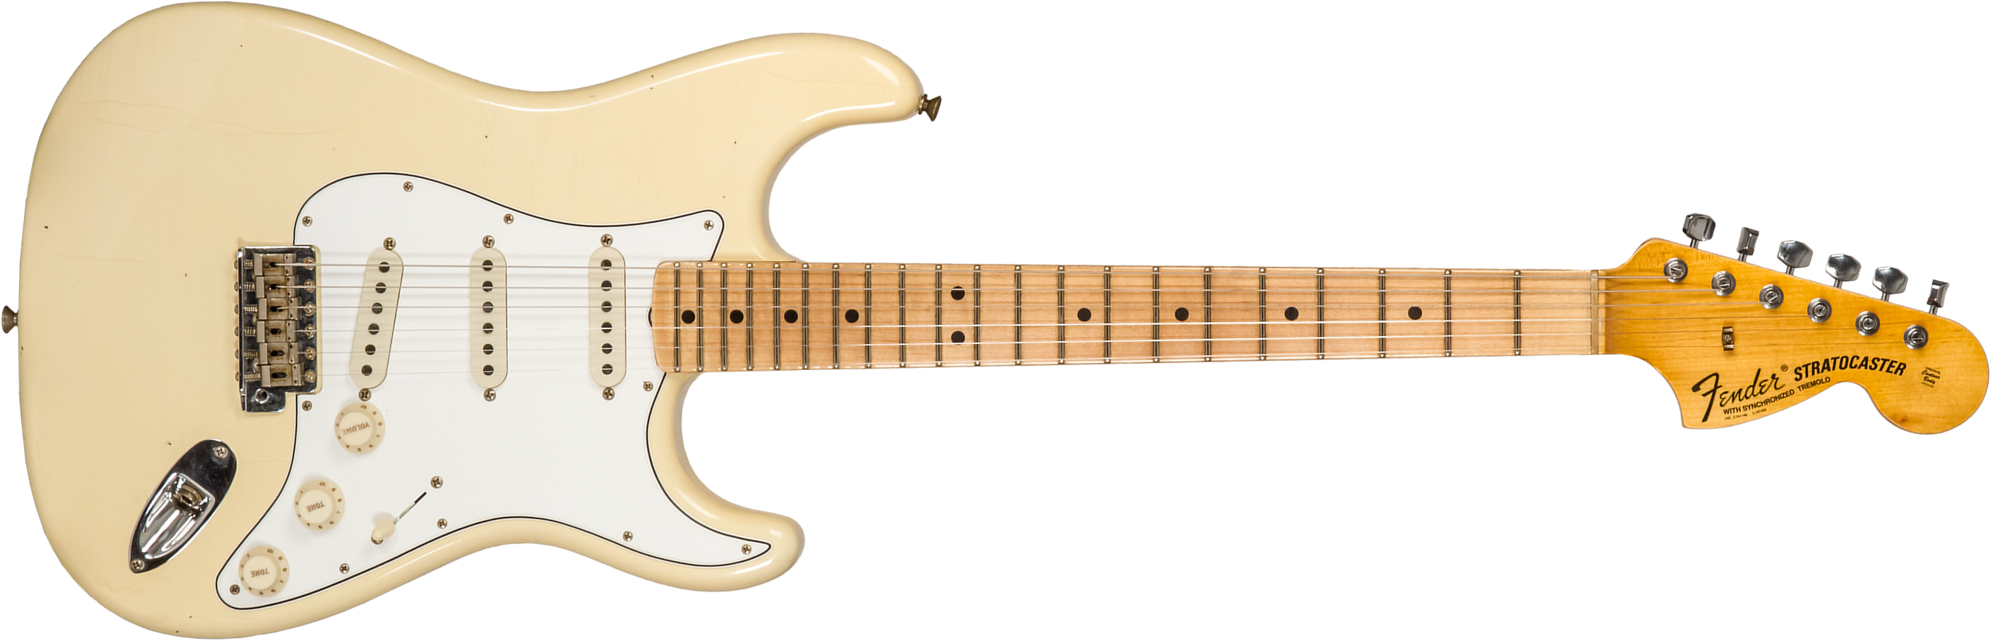 Fender Custom Shop Strat 1969 3s Trem Mn #cz576216 - Journeyman Relic Aged Vintage White - Guitare Électrique Forme Str - Main picture